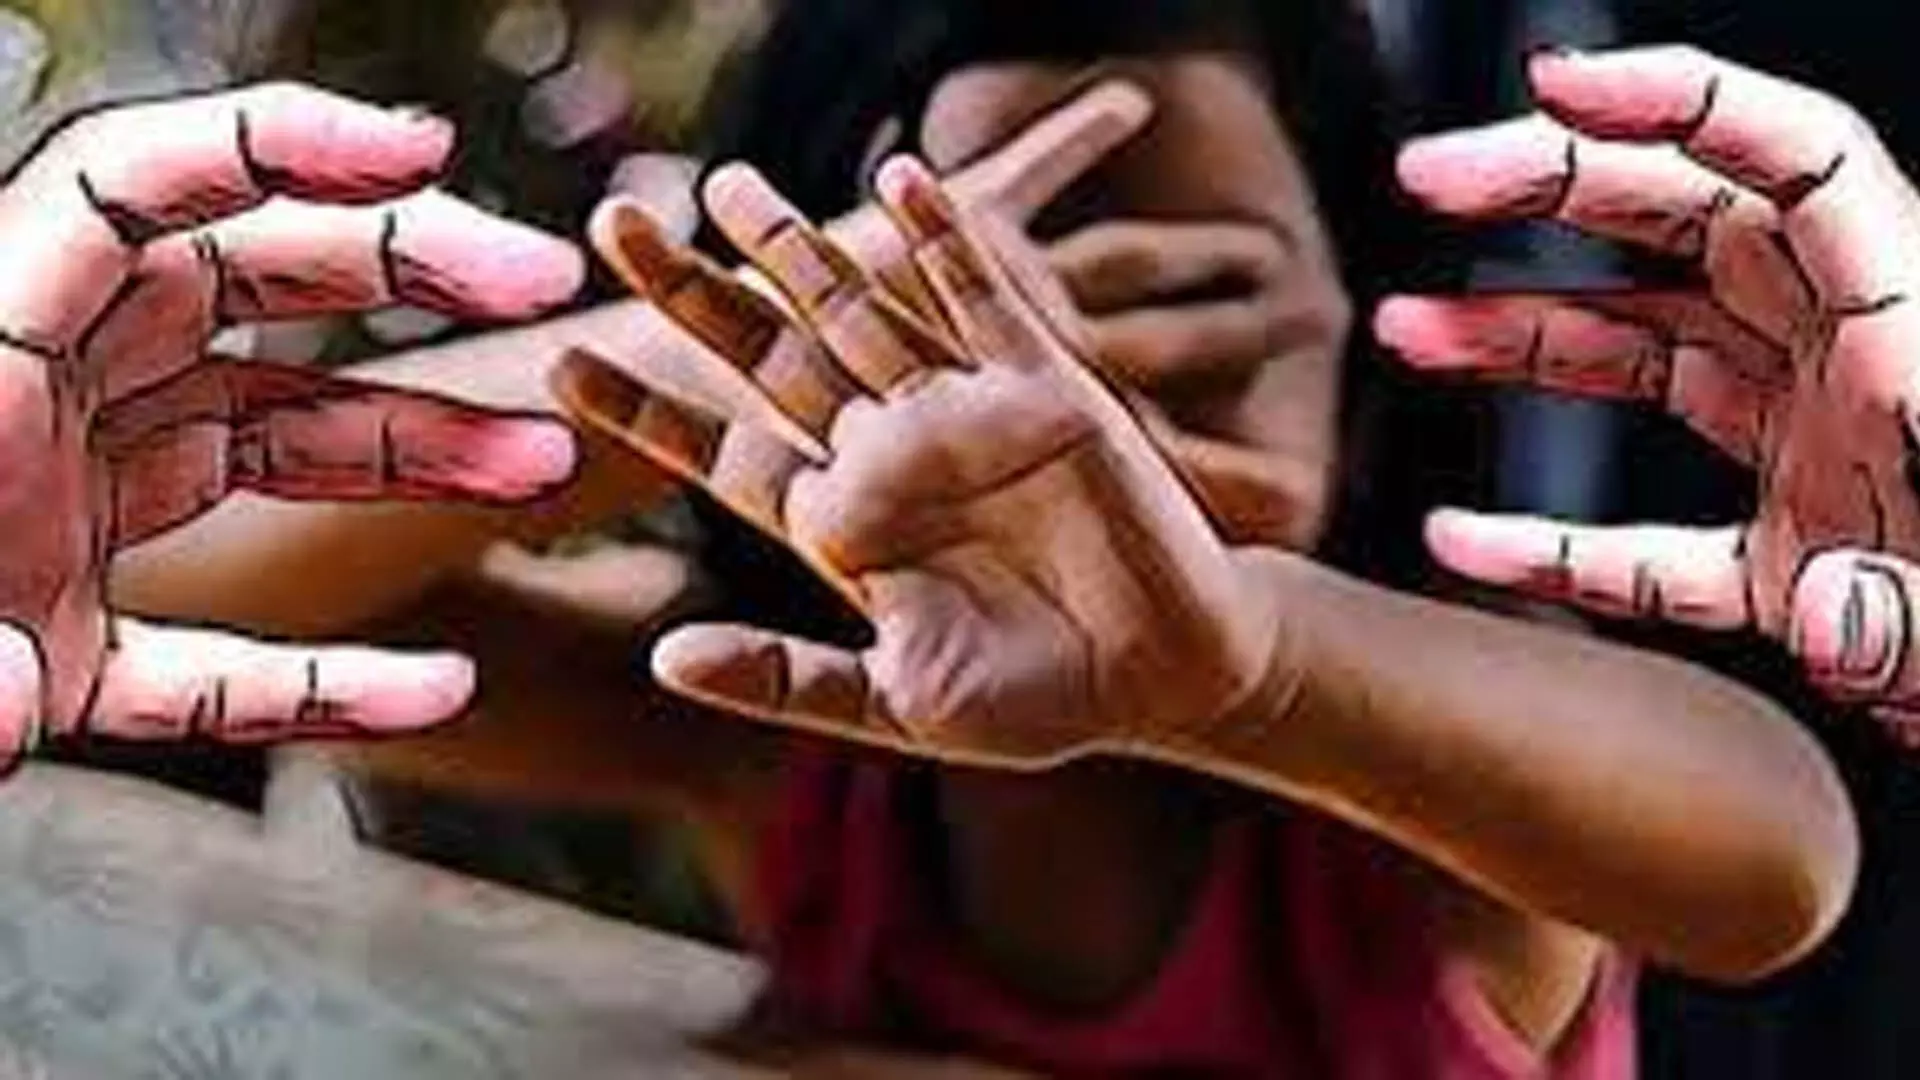 जैसलमेर, 5 साल की बेटी से बलात्कार आरोप , व्यक्ति उम्रकैद की सजा